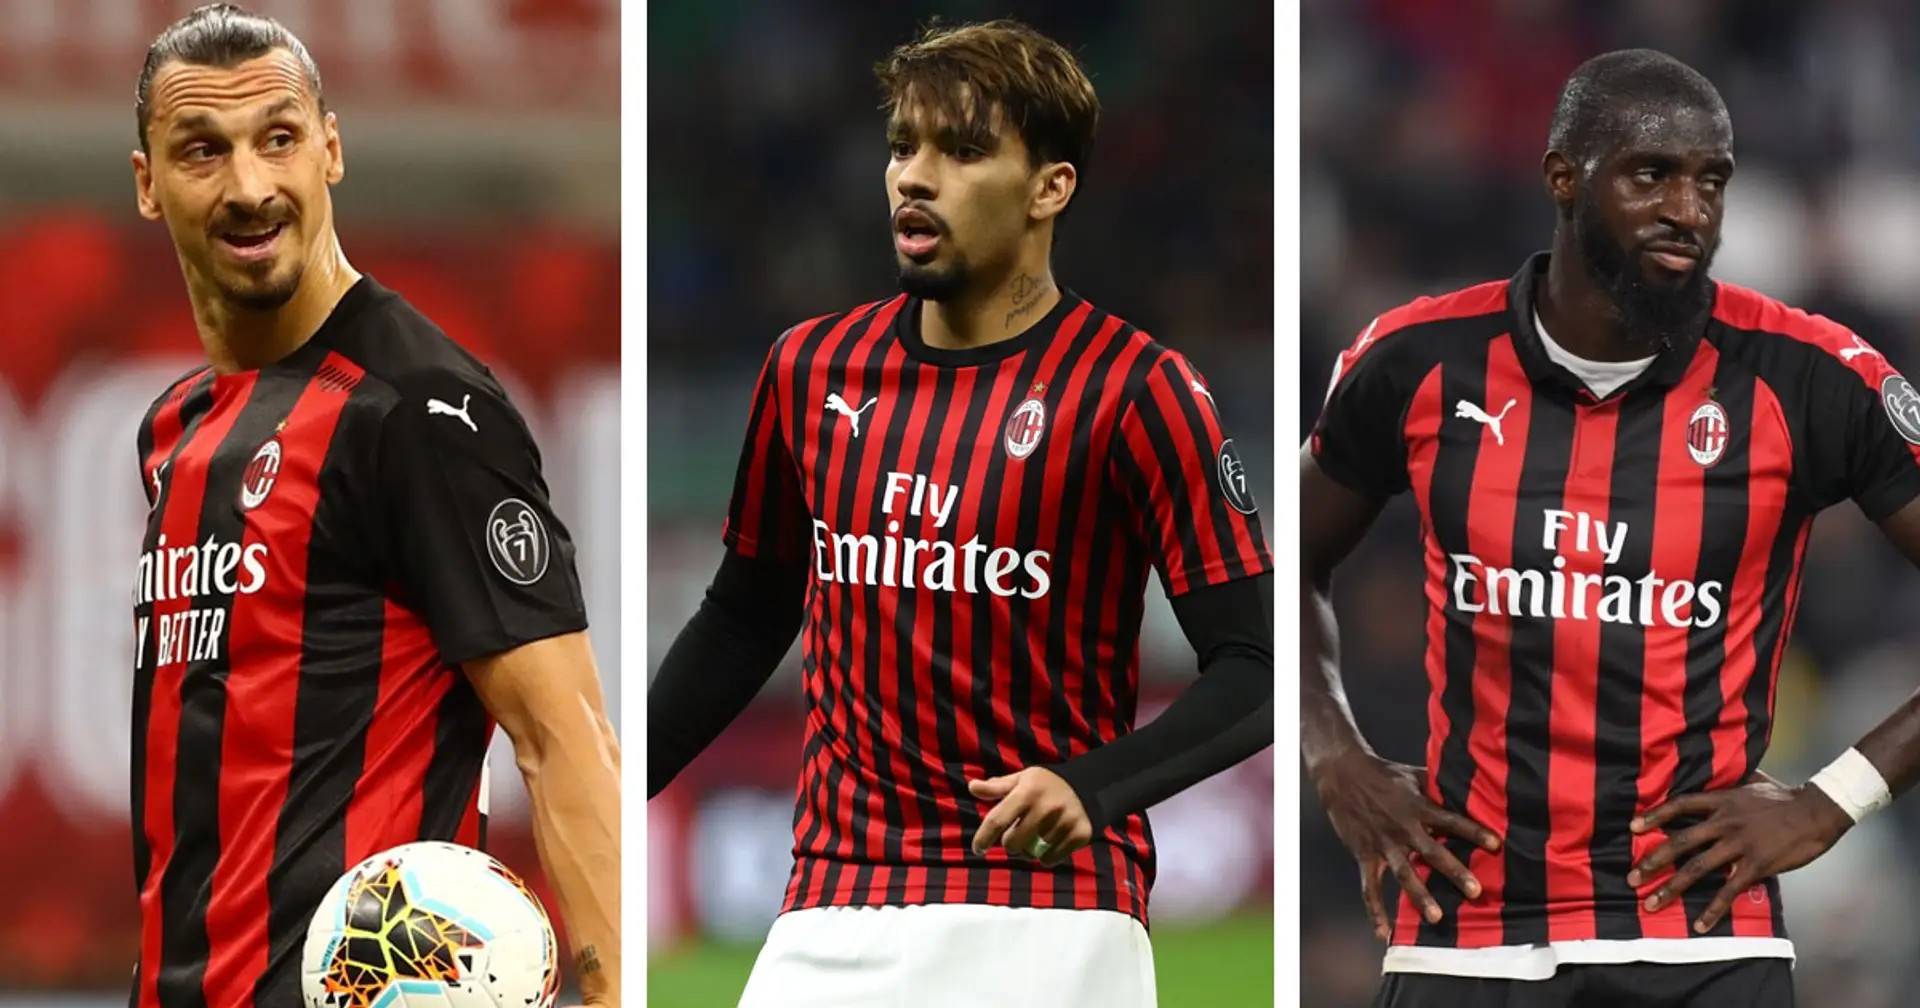 "Vi elenco la scaletta dei dirigenti rossoneri", Pellegatti indica i 4 punti prioritari del Milan